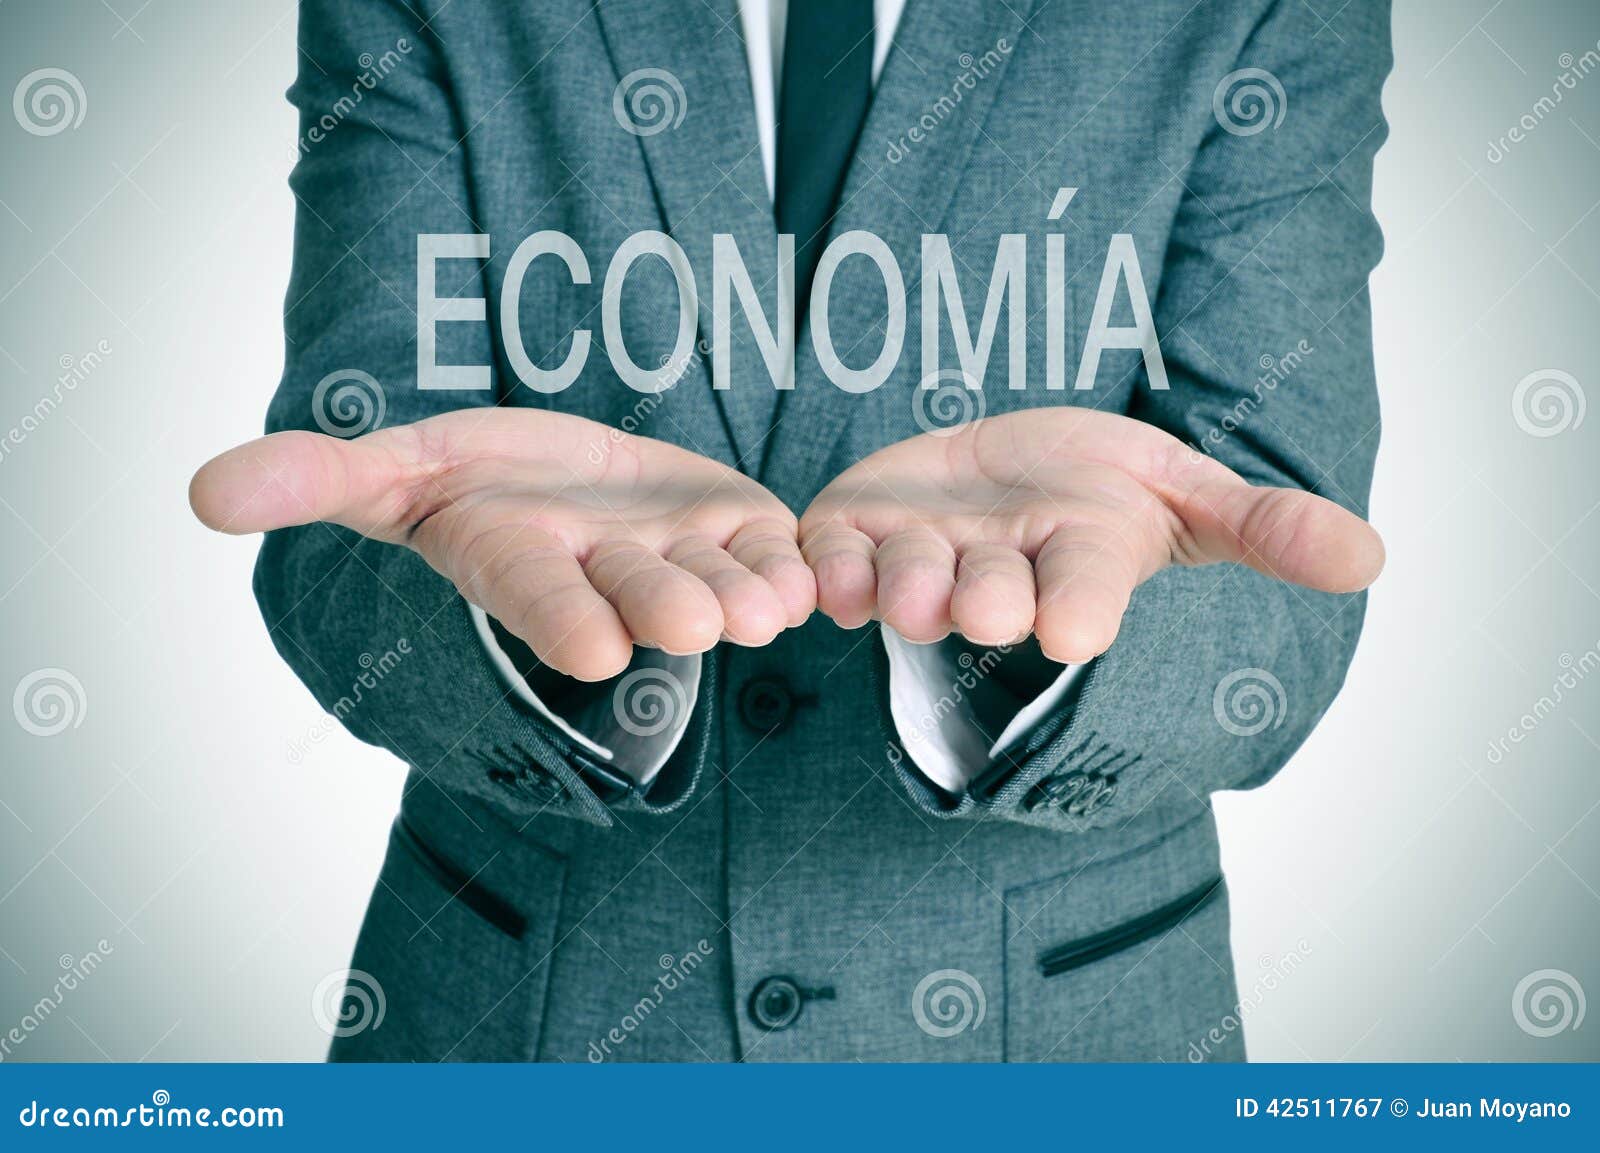 economia, economy in spanish